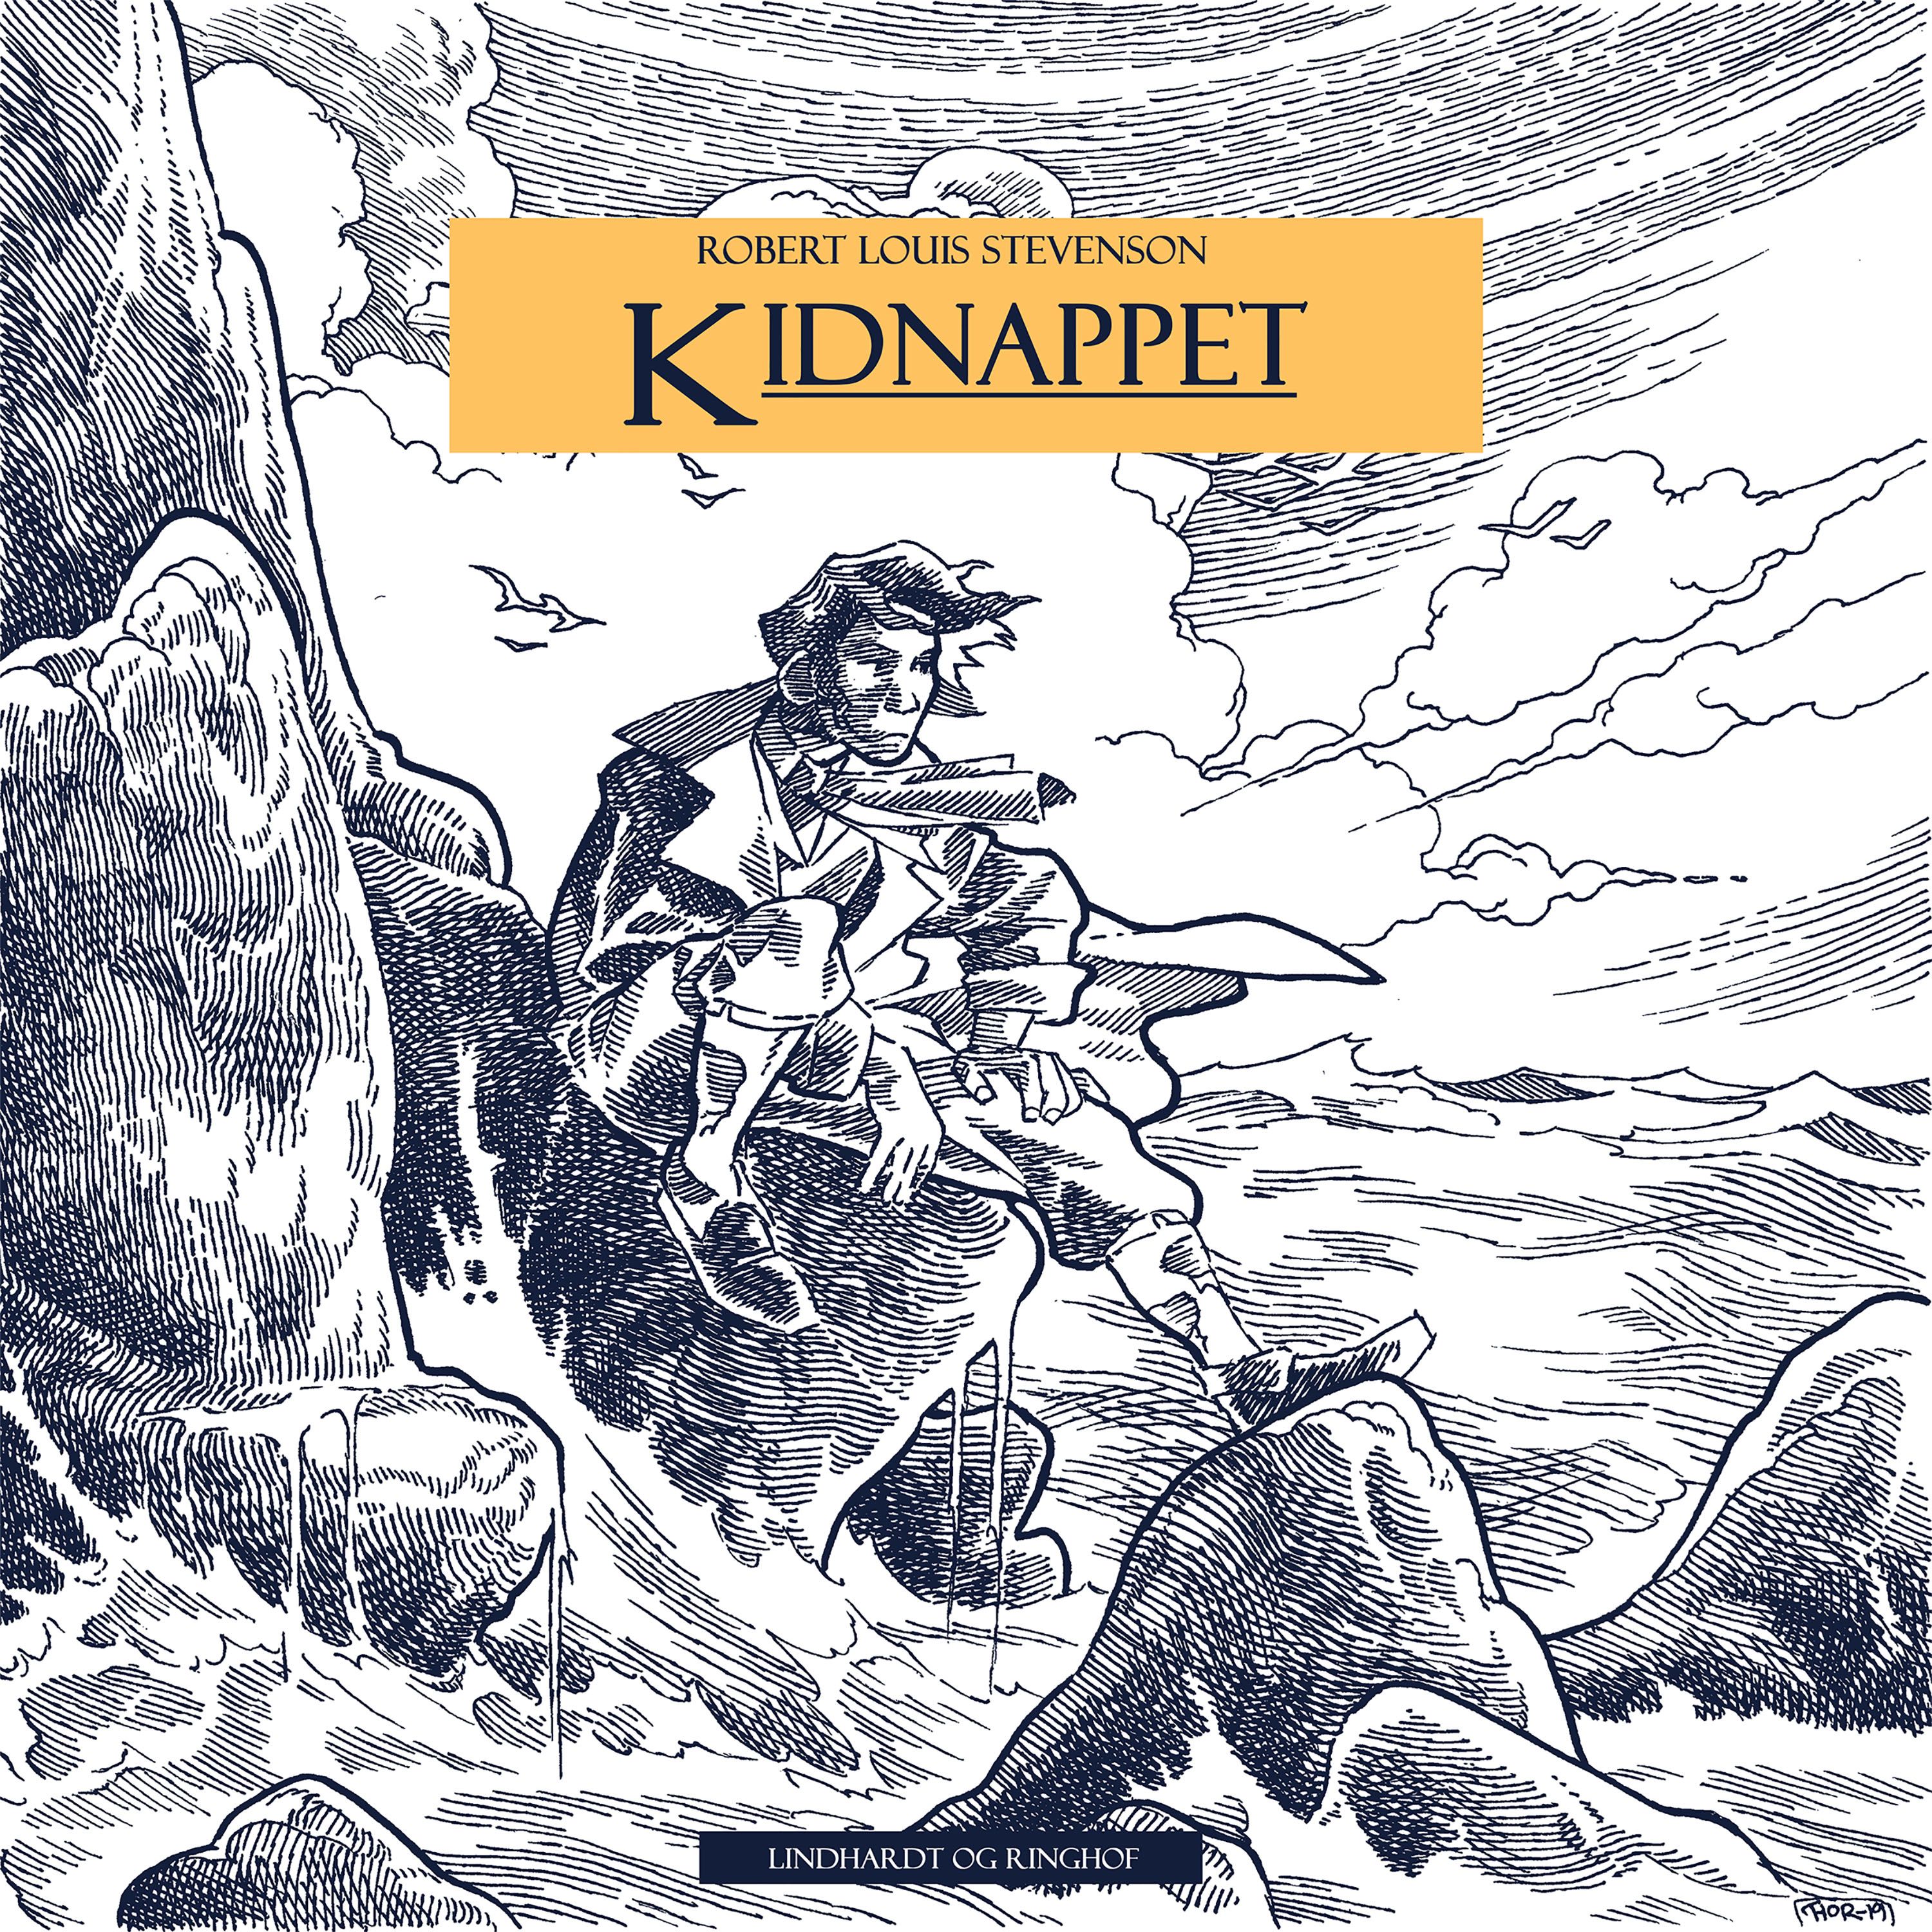 Kidnappet, lydbog af Robert Louis Stevenson